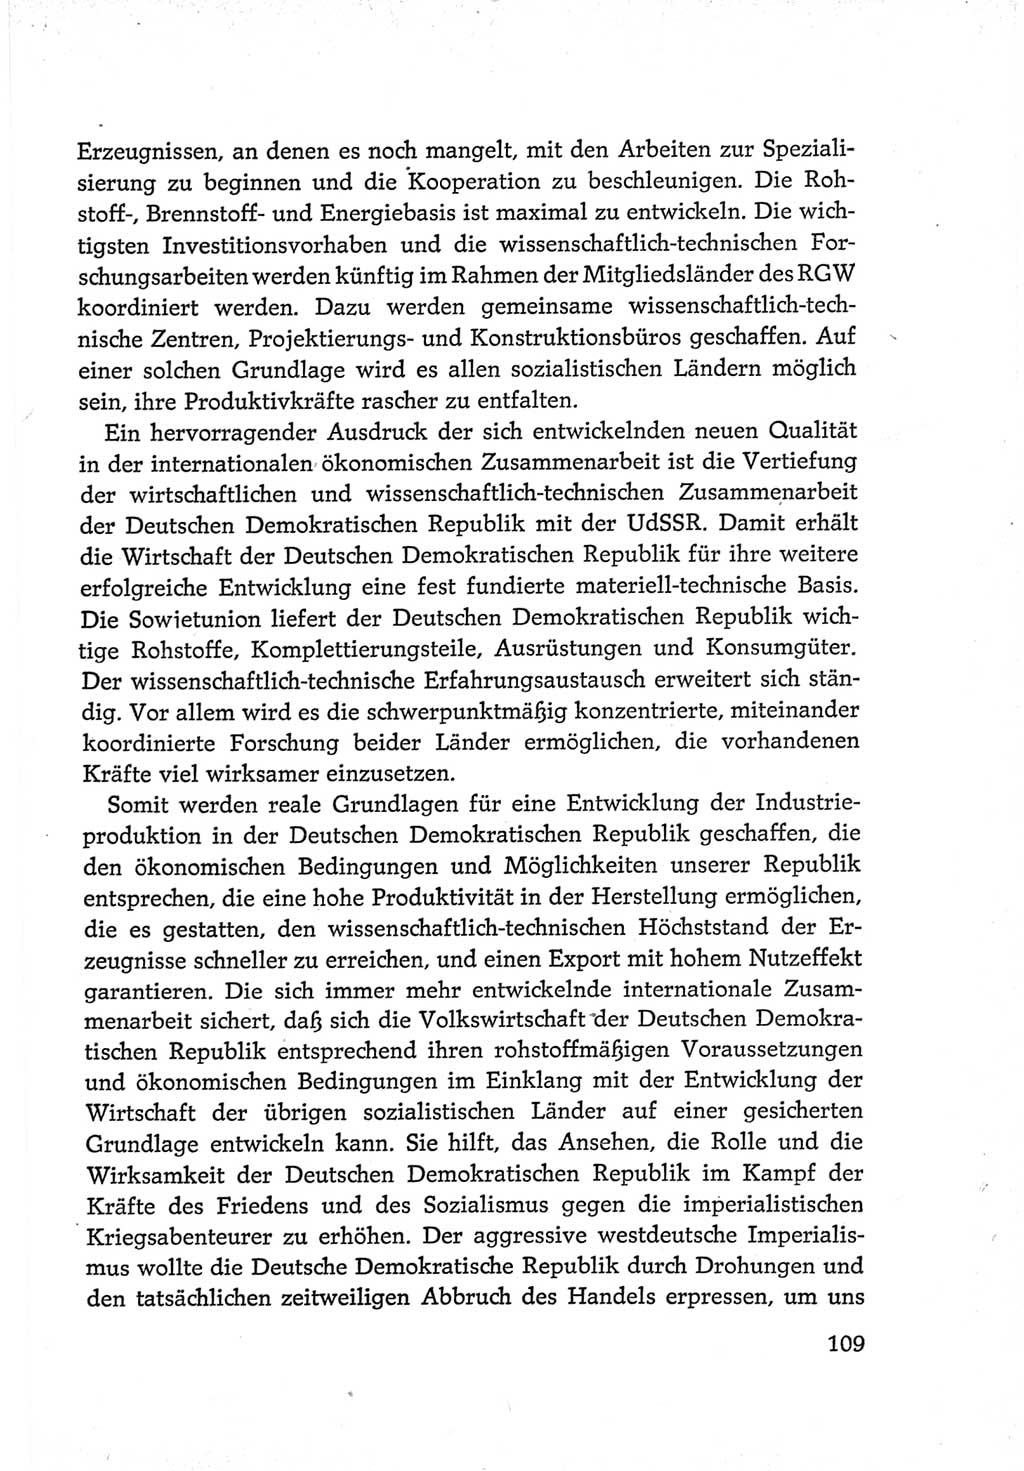 Protokoll der Verhandlungen des Ⅵ. Parteitages der Sozialistischen Einheitspartei Deutschlands (SED) [Deutsche Demokratische Republik (DDR)] 1963, Band Ⅳ, Seite 109 (Prot. Verh. Ⅵ. PT SED DDR 1963, Bd. Ⅳ, S. 109)